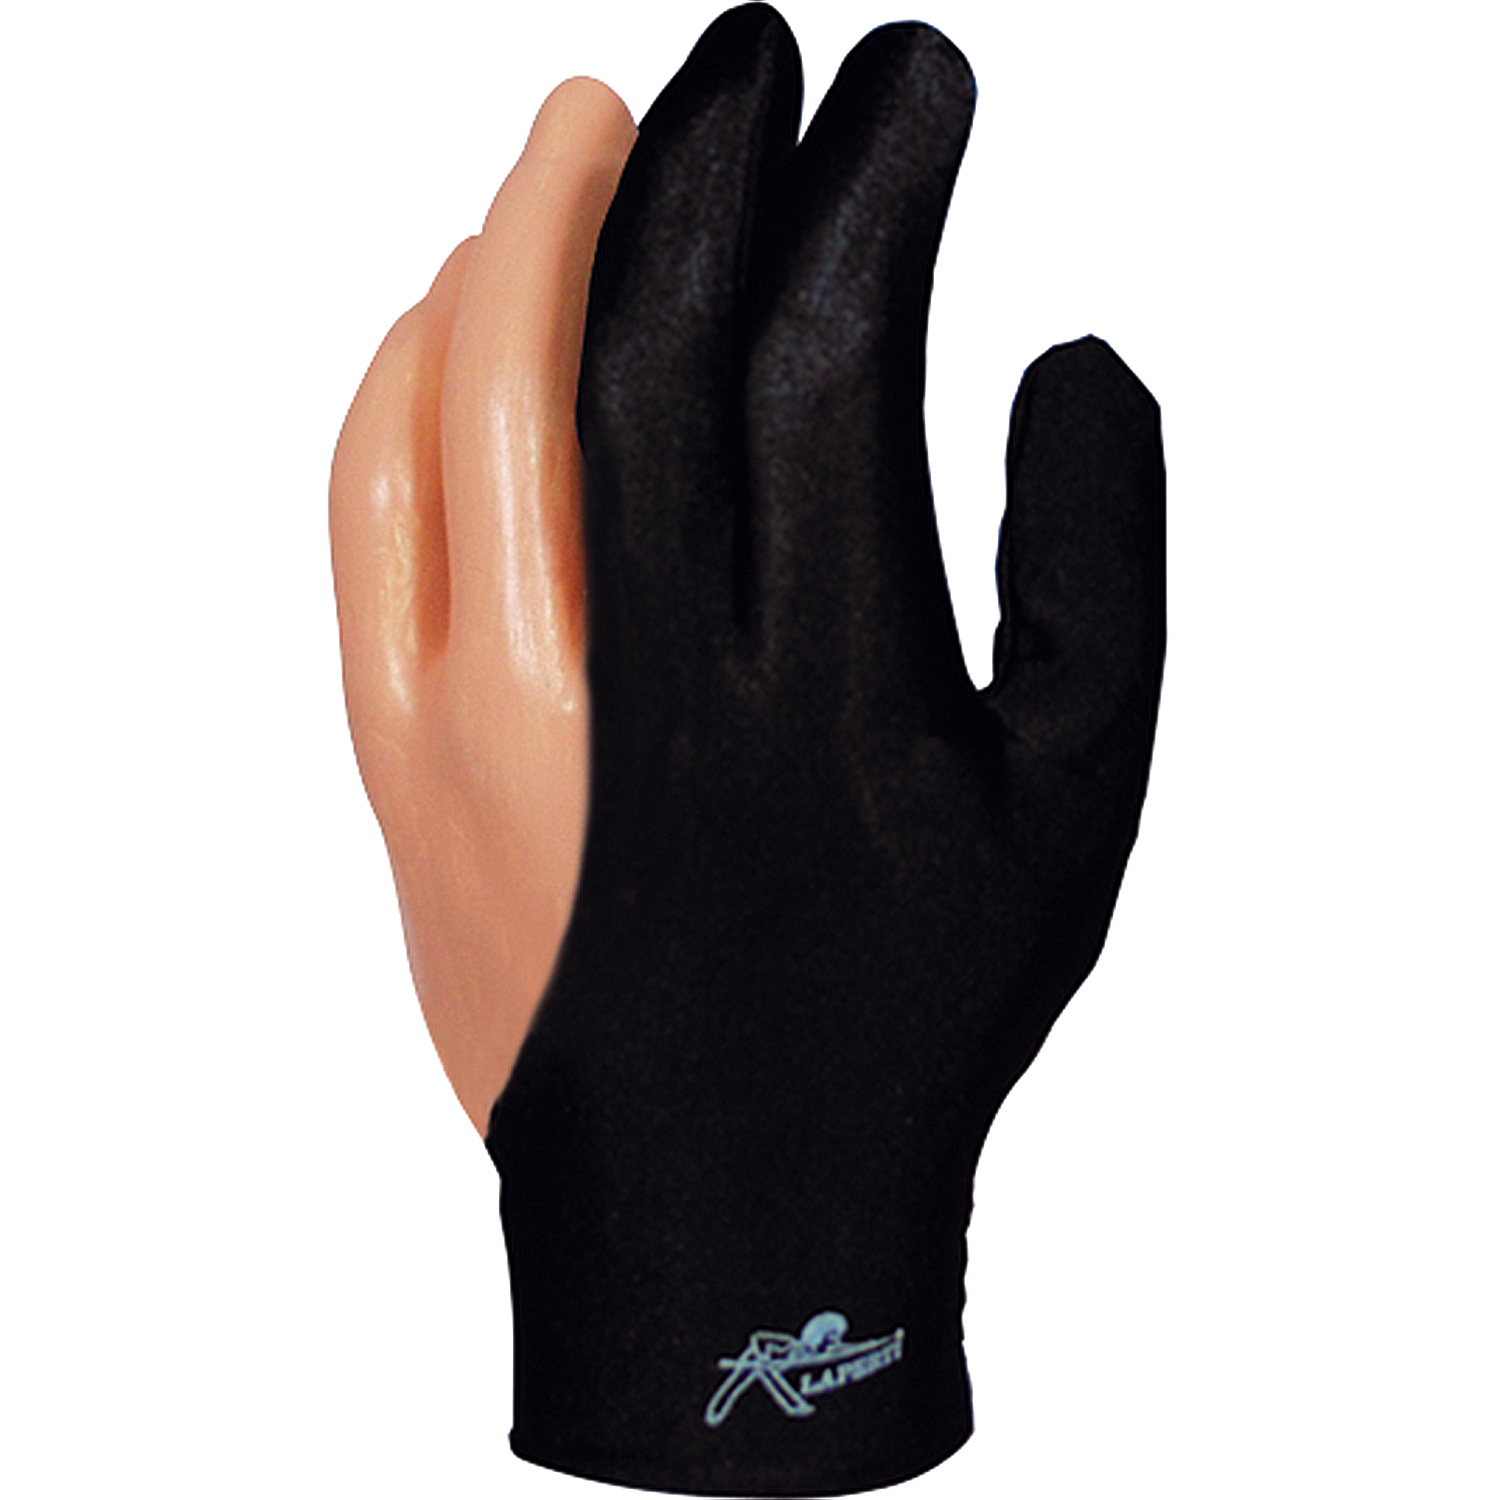 Glove Laperti Velcro closure, Medium